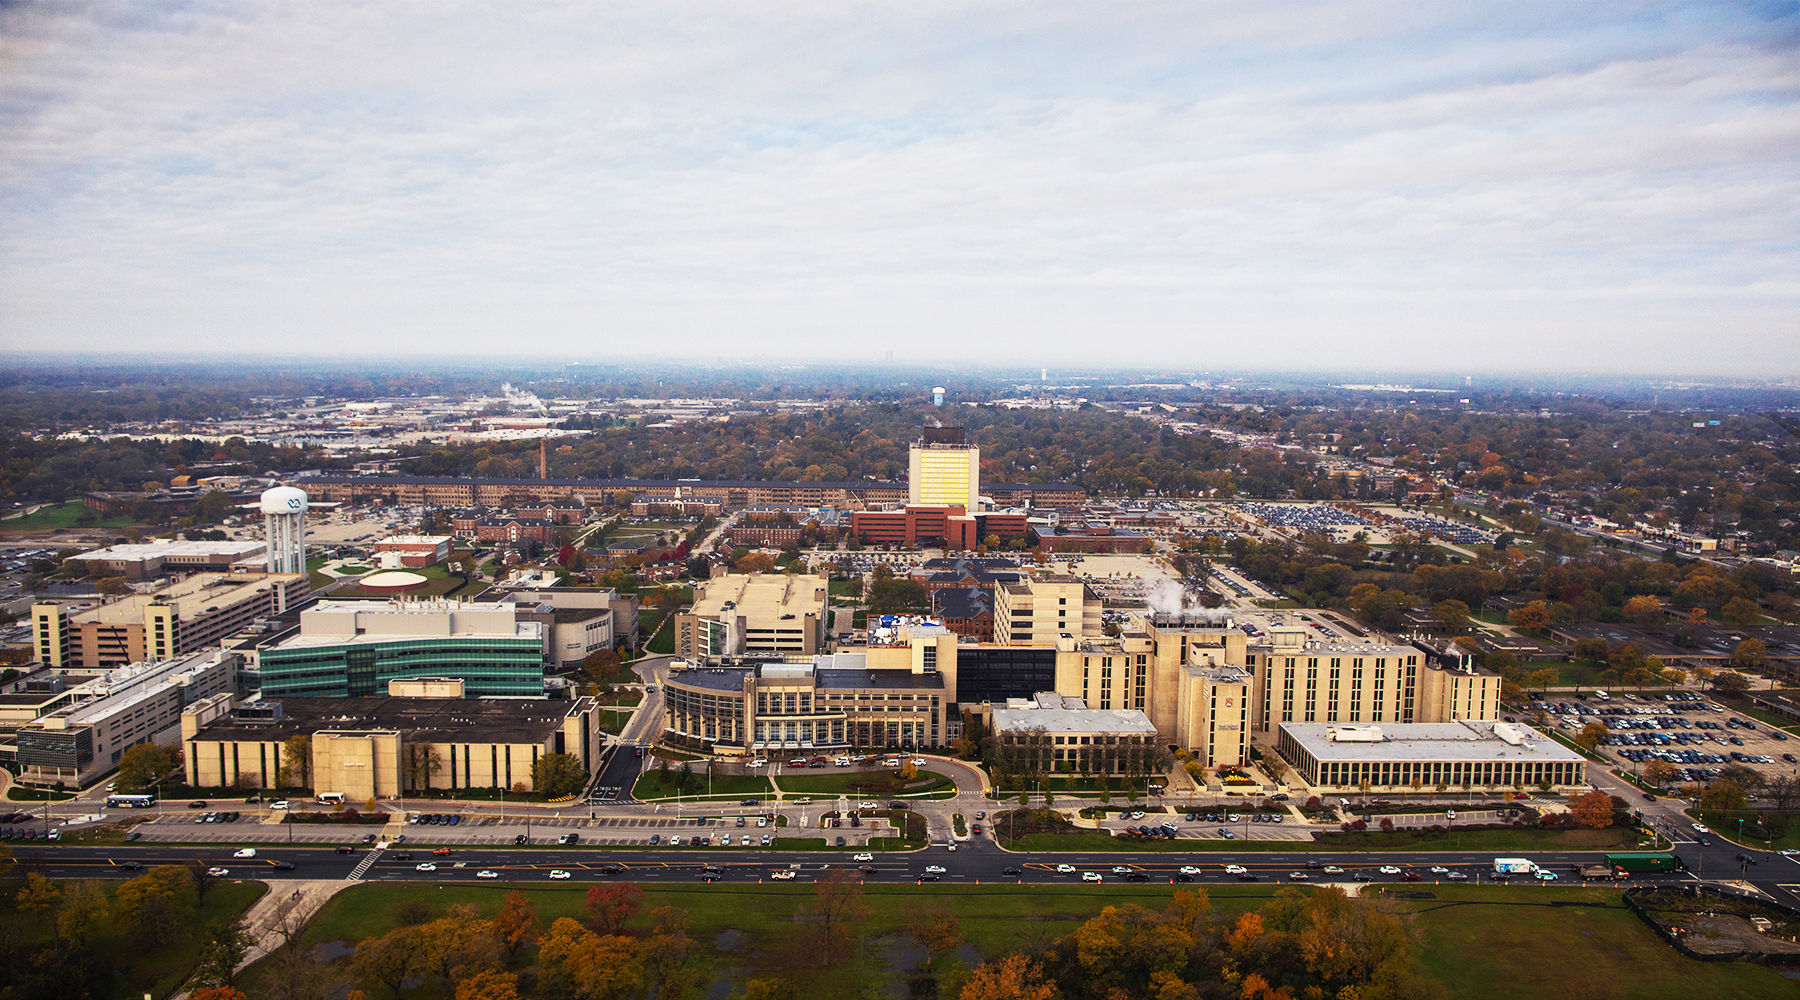 HSC Campus aerial photo